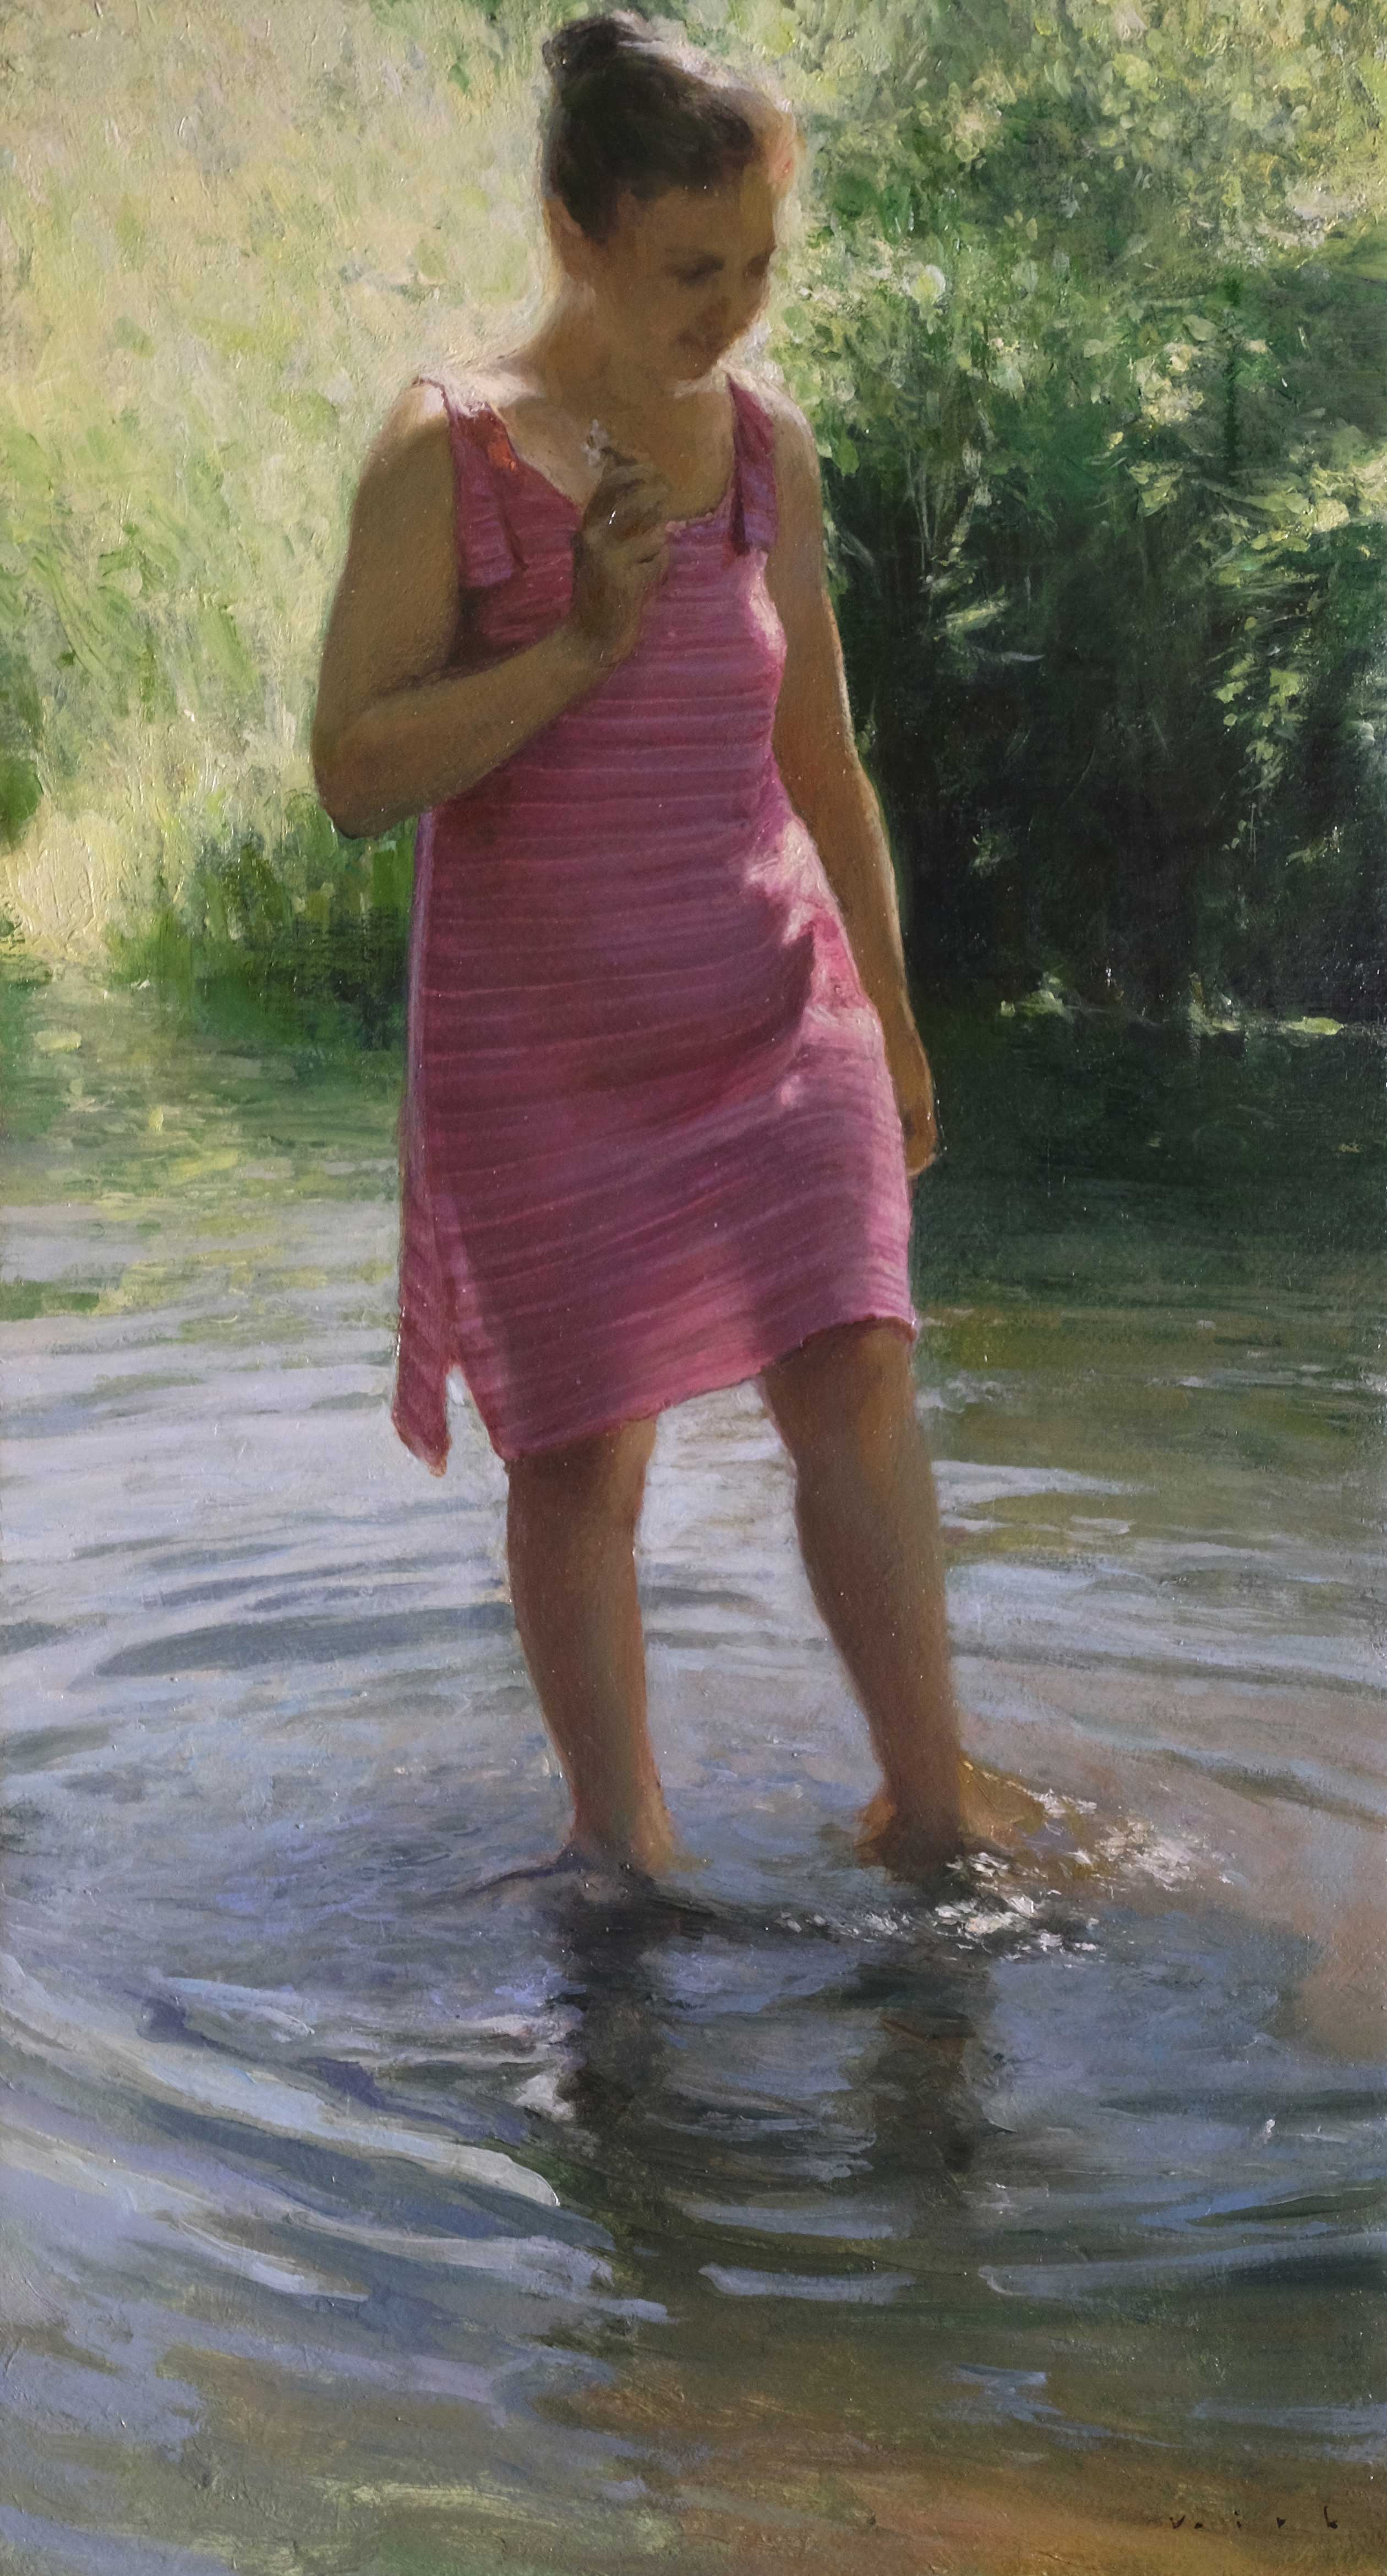 Got my feet wet - 1, Vladimir Kirillov, Buy the painting Oil